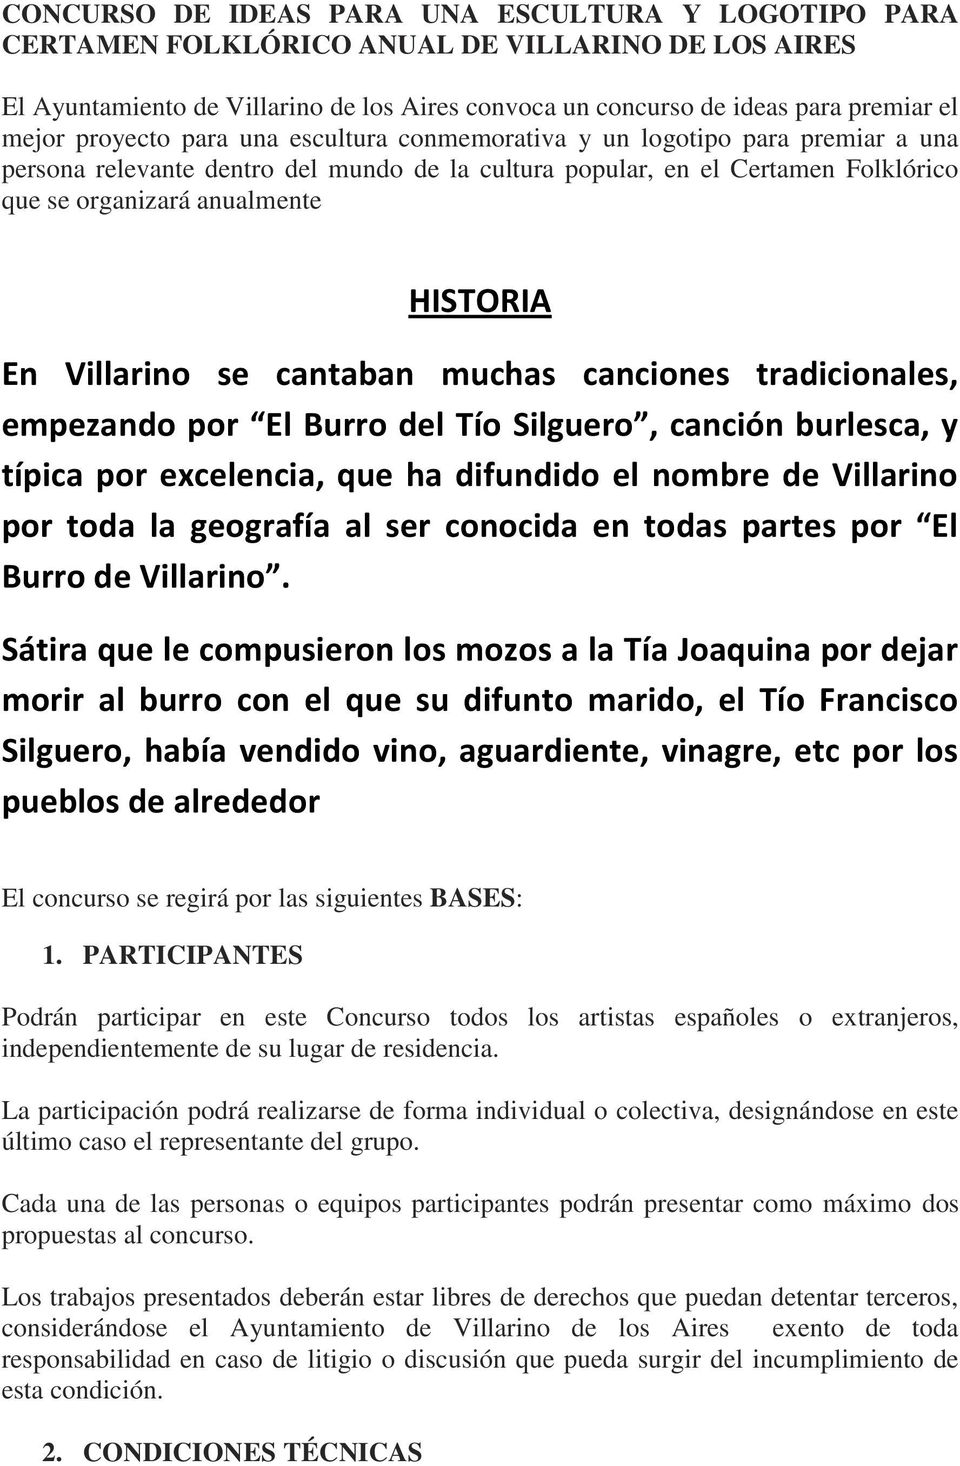 Villarino se cantaban muchas canciones tradicionales, empezando por El Burro del Tío Silguero, canción burlesca, y típica por excelencia, que ha difundido el nombre de Villarino por toda la geografía